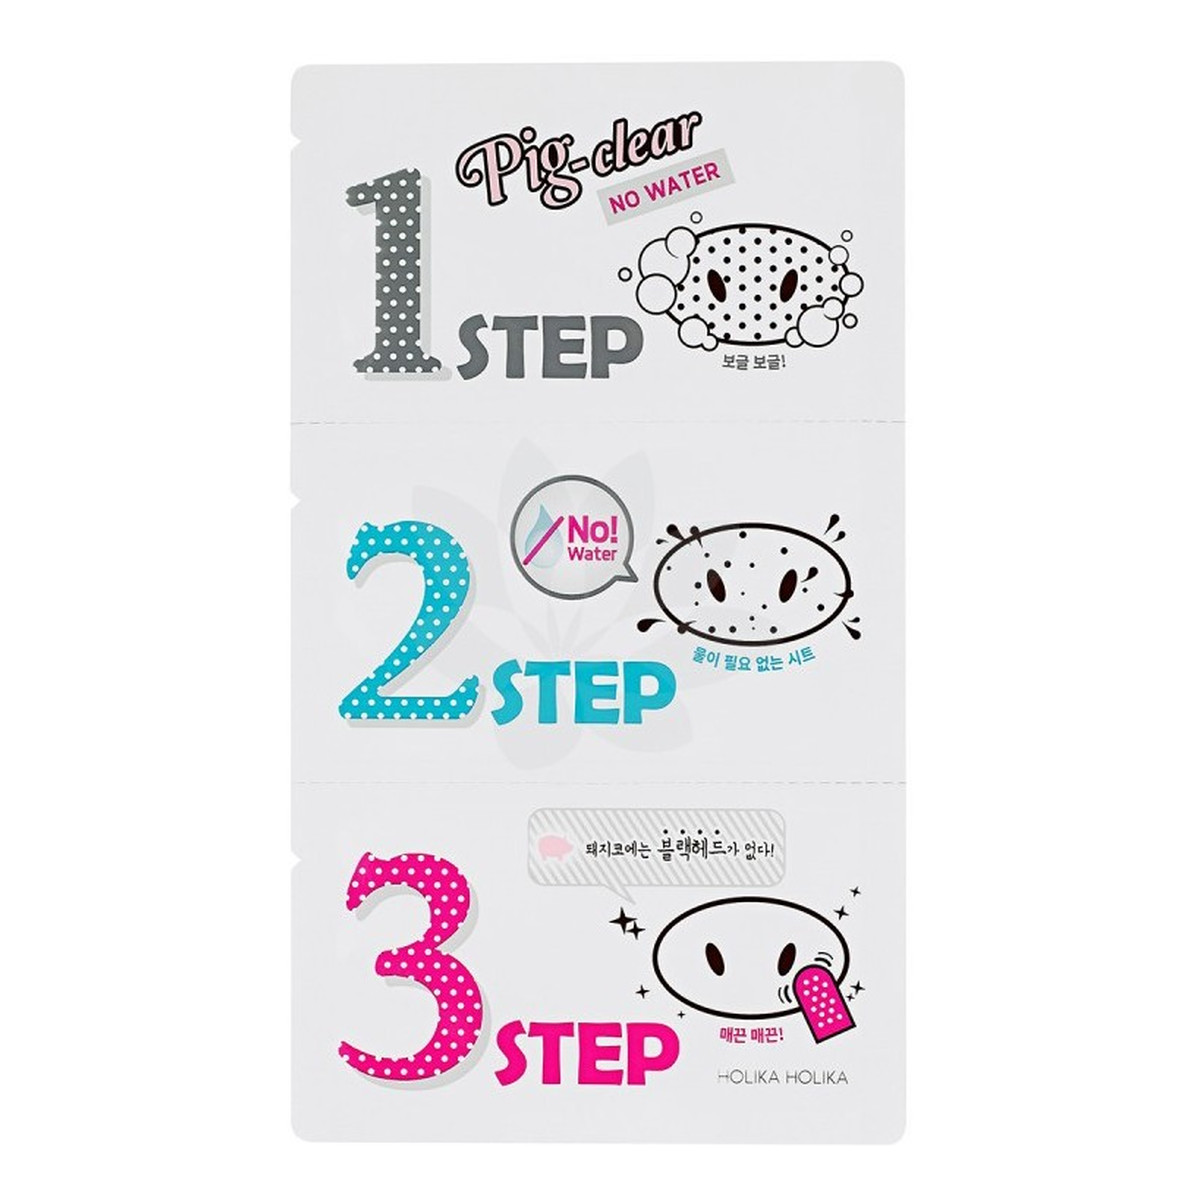 Holika Holika Pig Clear Blackhead 3-Step Kit (No Water) Zestaw Plasterków Do Oczyszczania Porów Na Nosie 3g